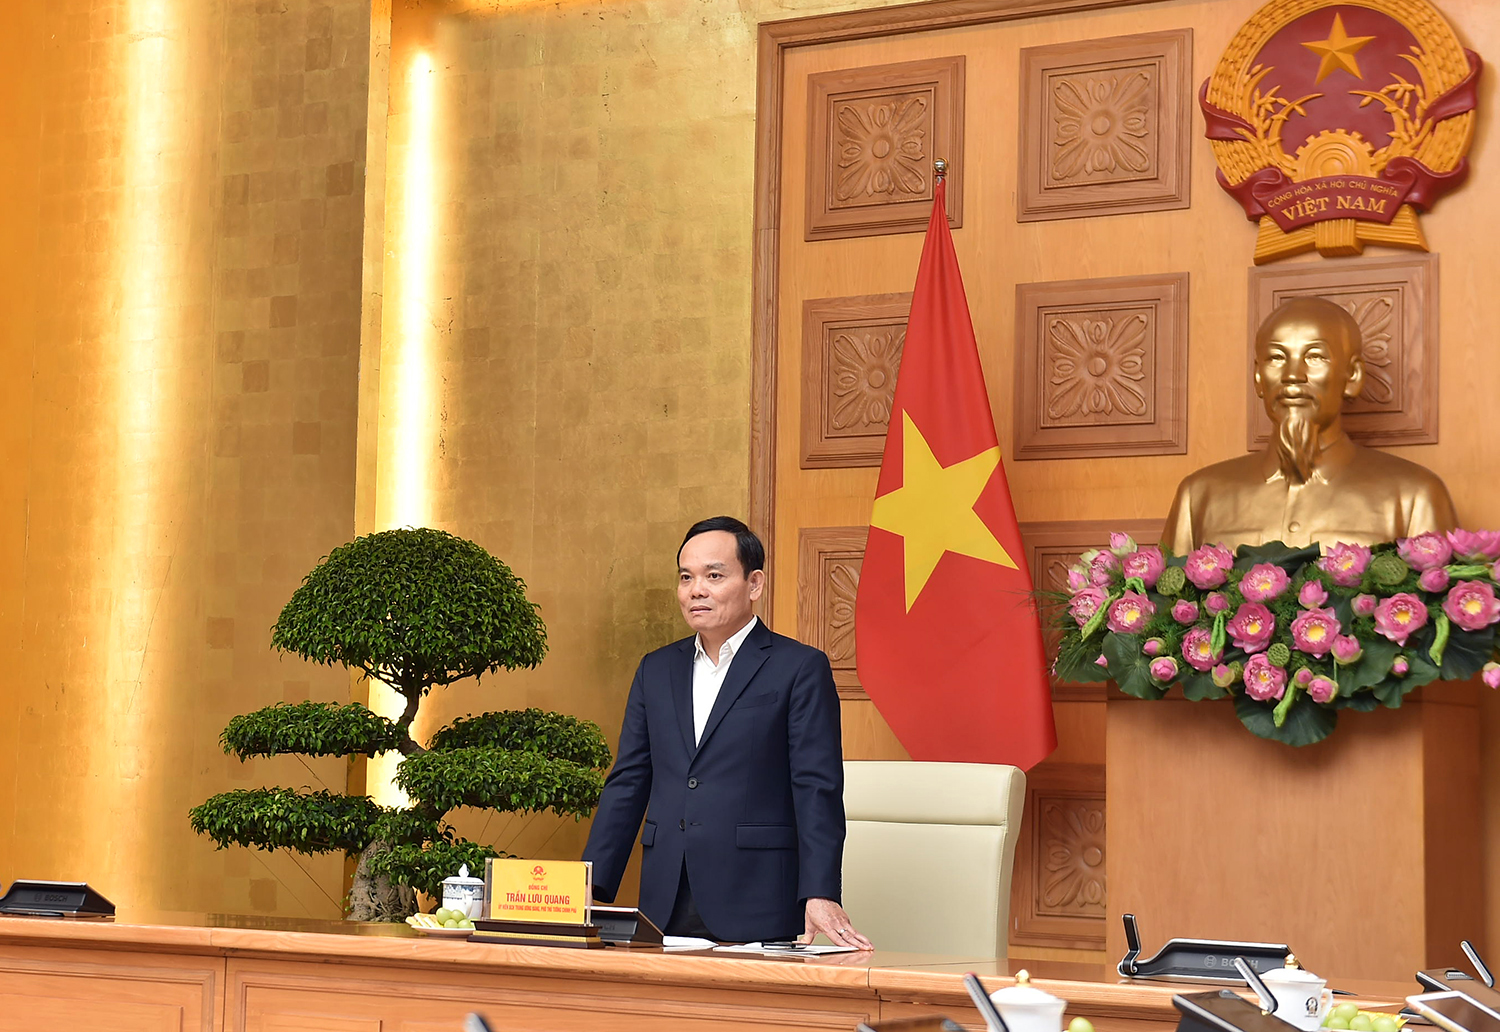 Phó Thủ tướng Trần Lưu Quang đánh giá cao và biểu dương những đóng góp của GHPG Việt Nam nói chung, Ni giới GHPG Việt Nam nói riêng trong công cuộc xây dựng và phát triển đất nước - Ảnh: VGP/Hải Minh